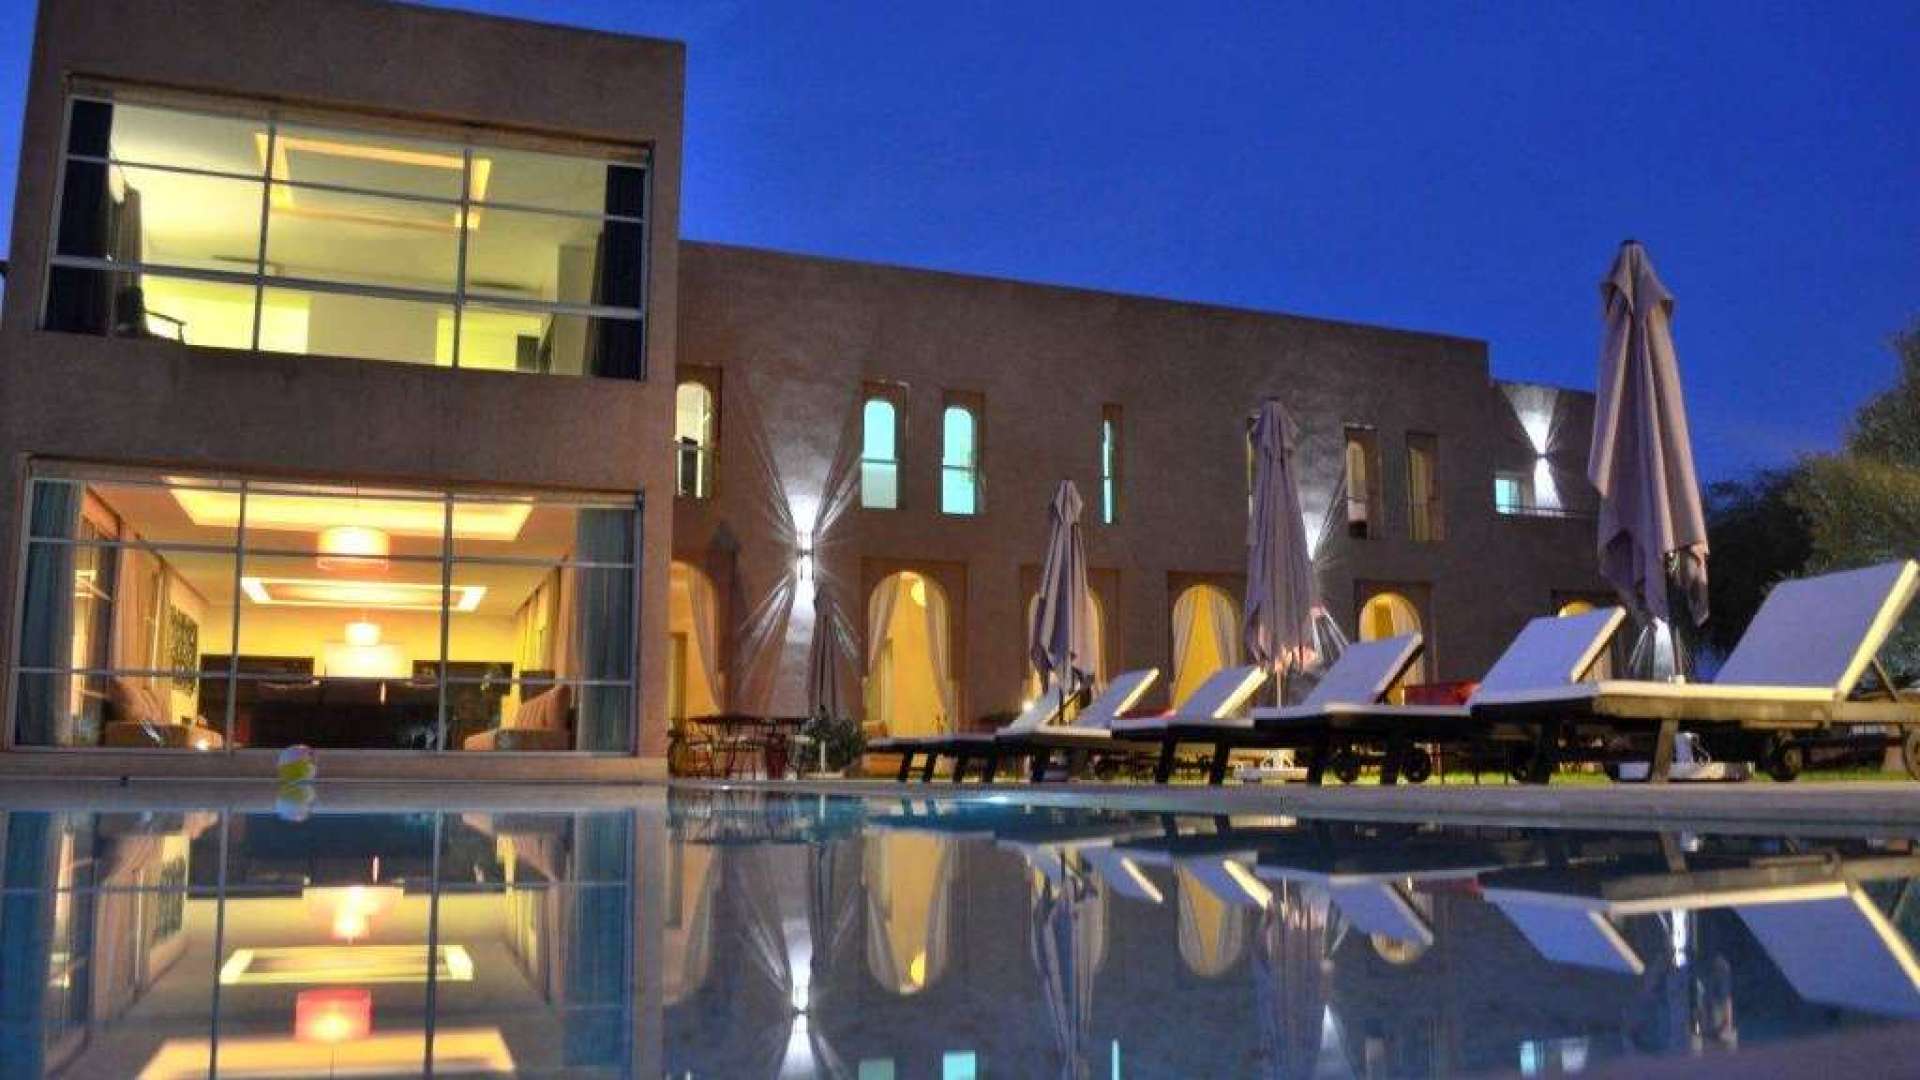 Location de vacances,Villa,Magnifique villa 6ch - 2 piscines - hammam - Bab Atlas,Marrakech,Bab Atlas